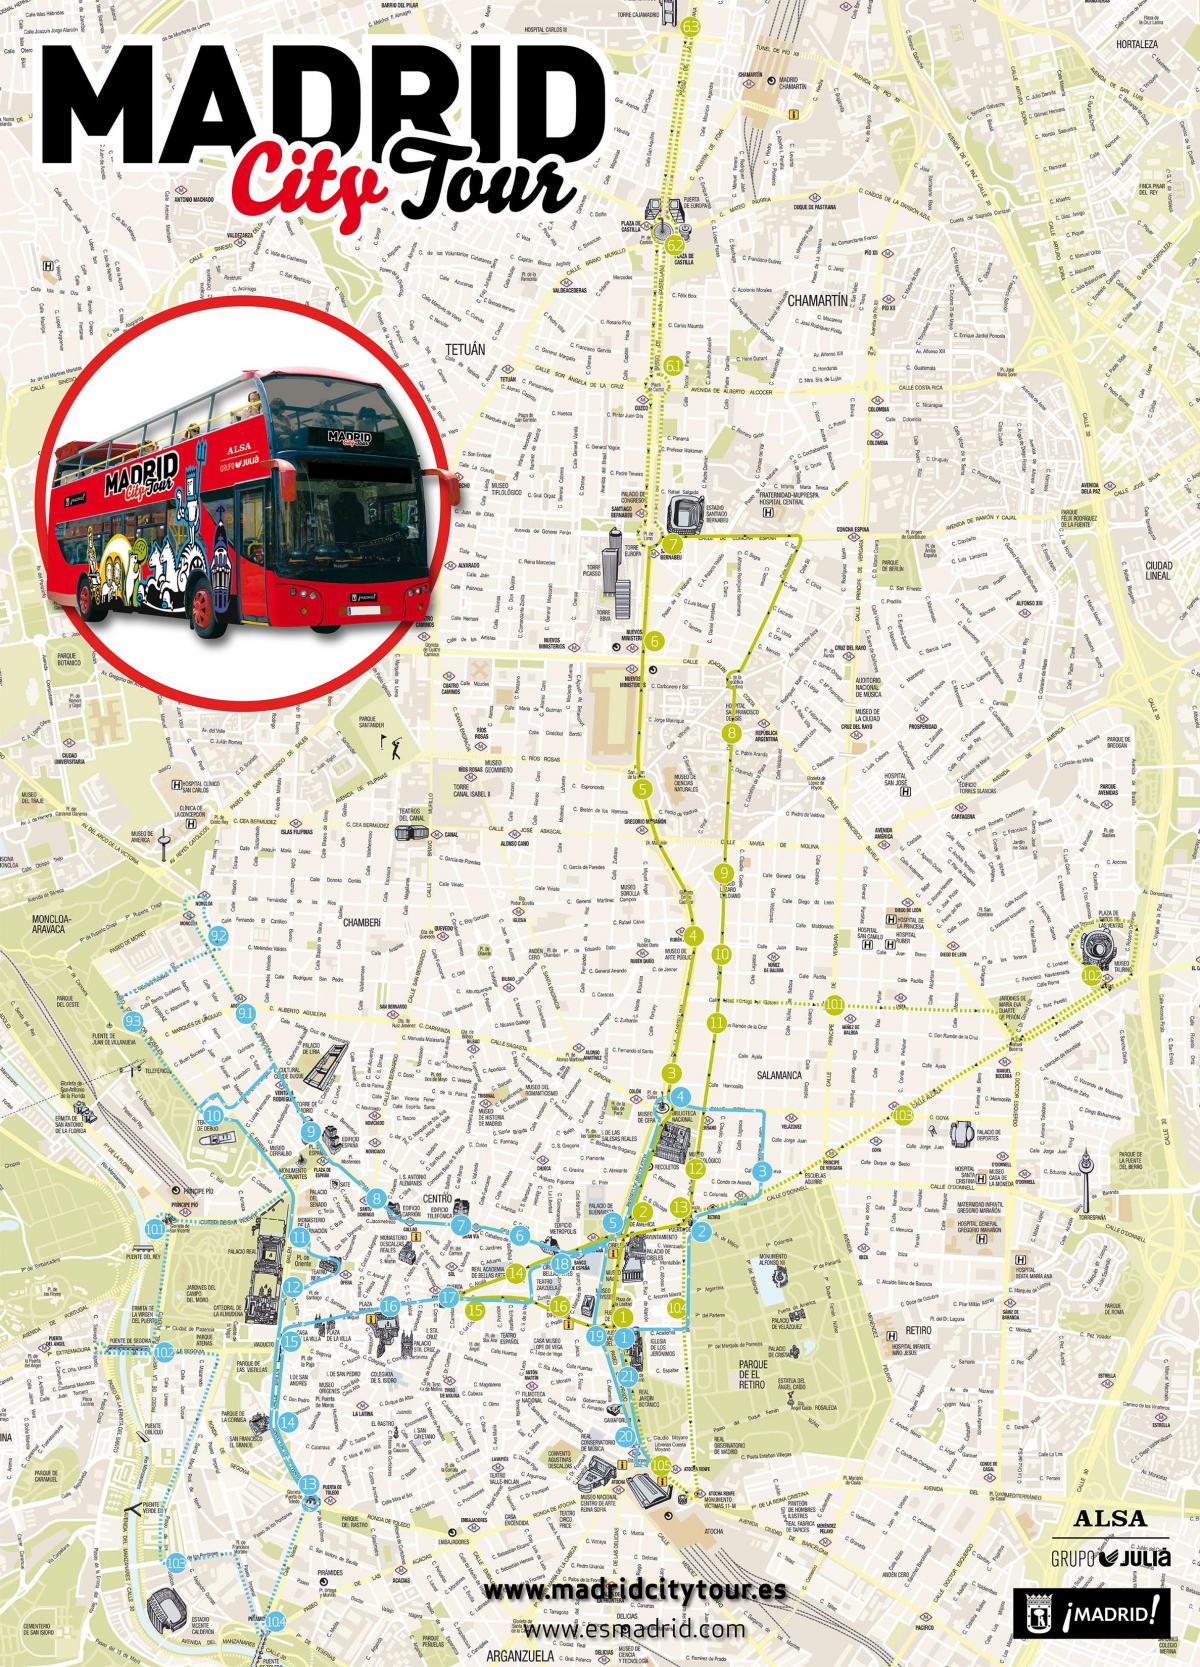 Madrid sightseeing bus kaart